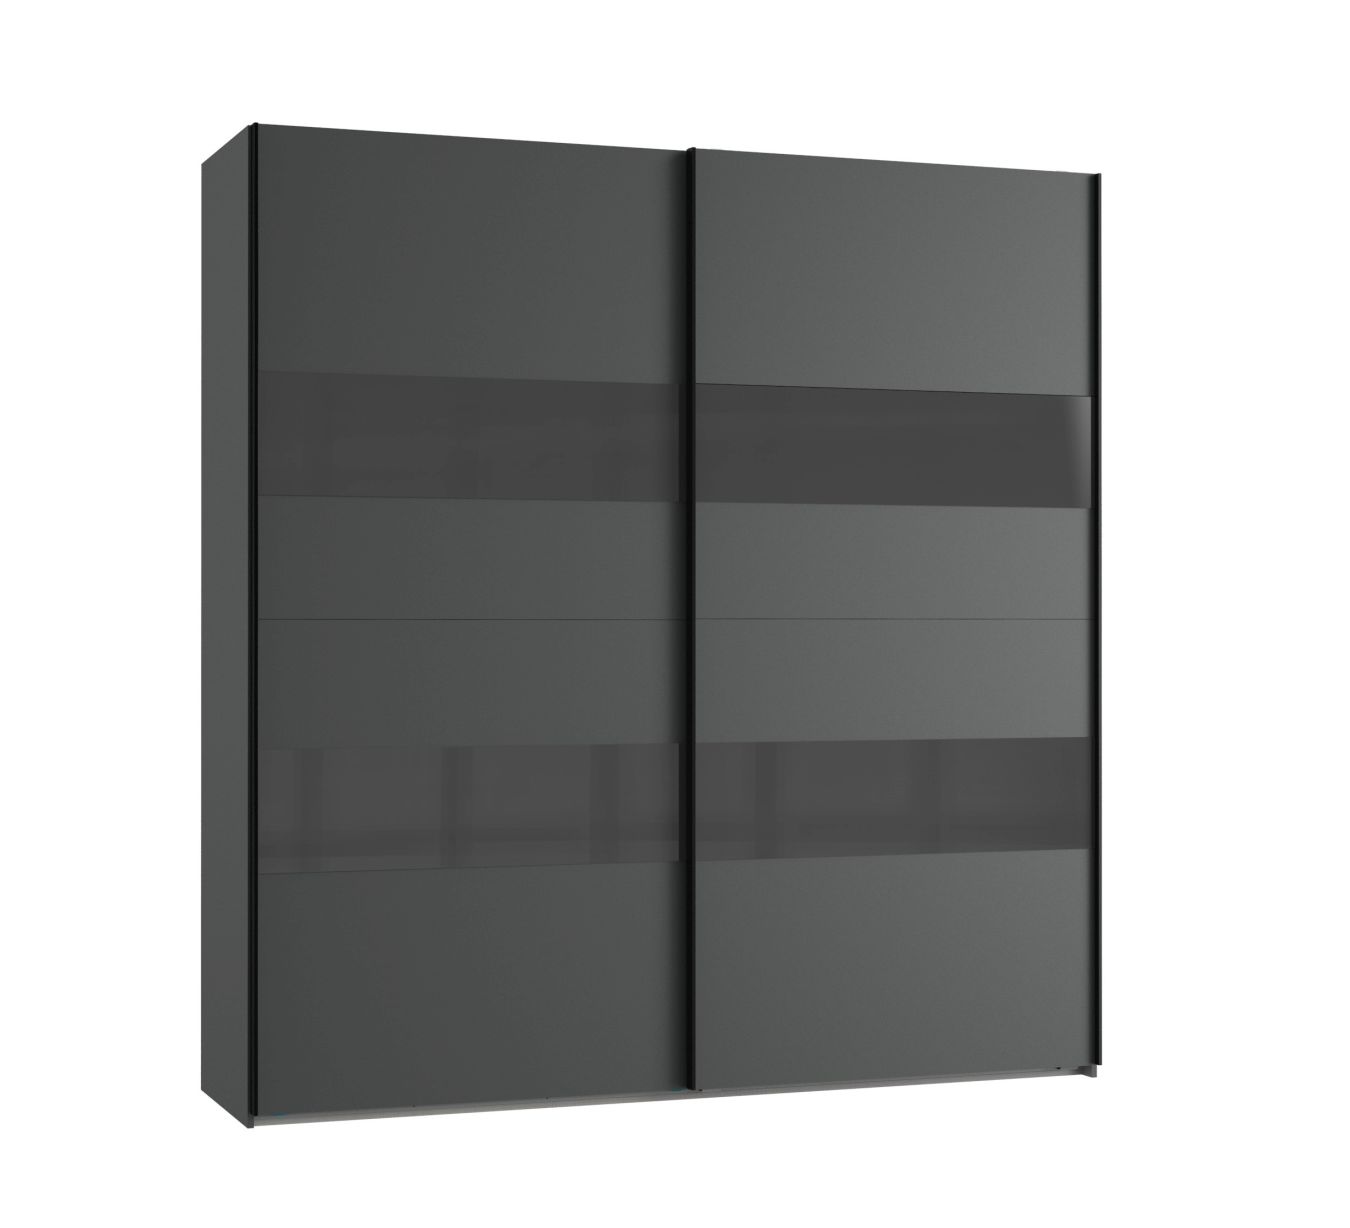 Schwebetürenschrank 2-trg 225cm breit ALTONA 2 von Wimex Graphit / Glas Grey | Schwebetürenschränke